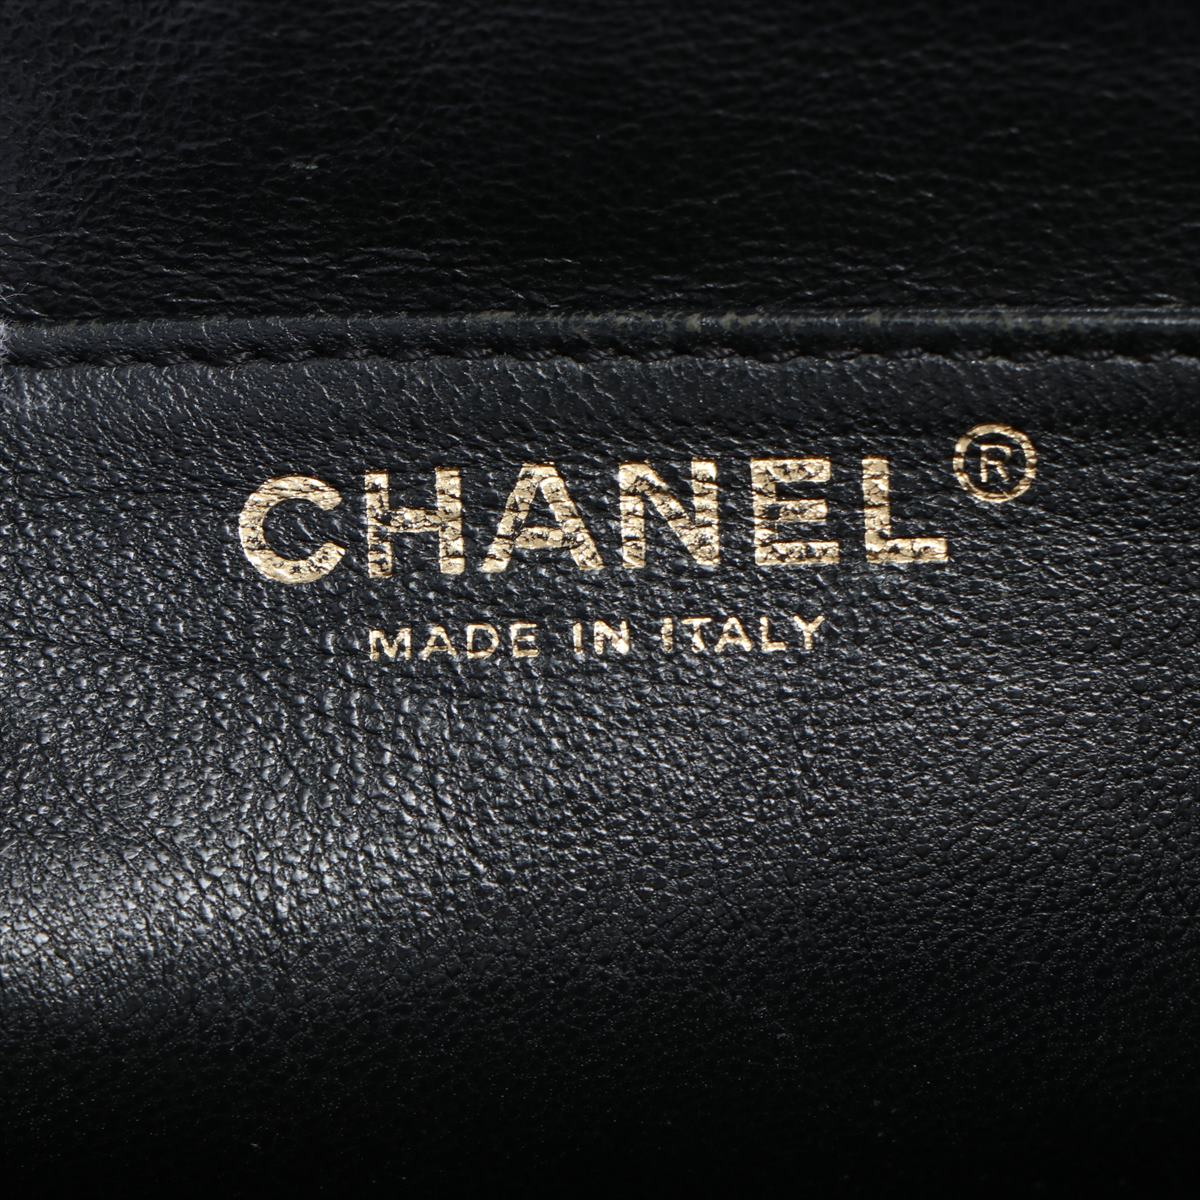 Chanel Matrasse Caviar Kelly Handbag Black Silver Gold